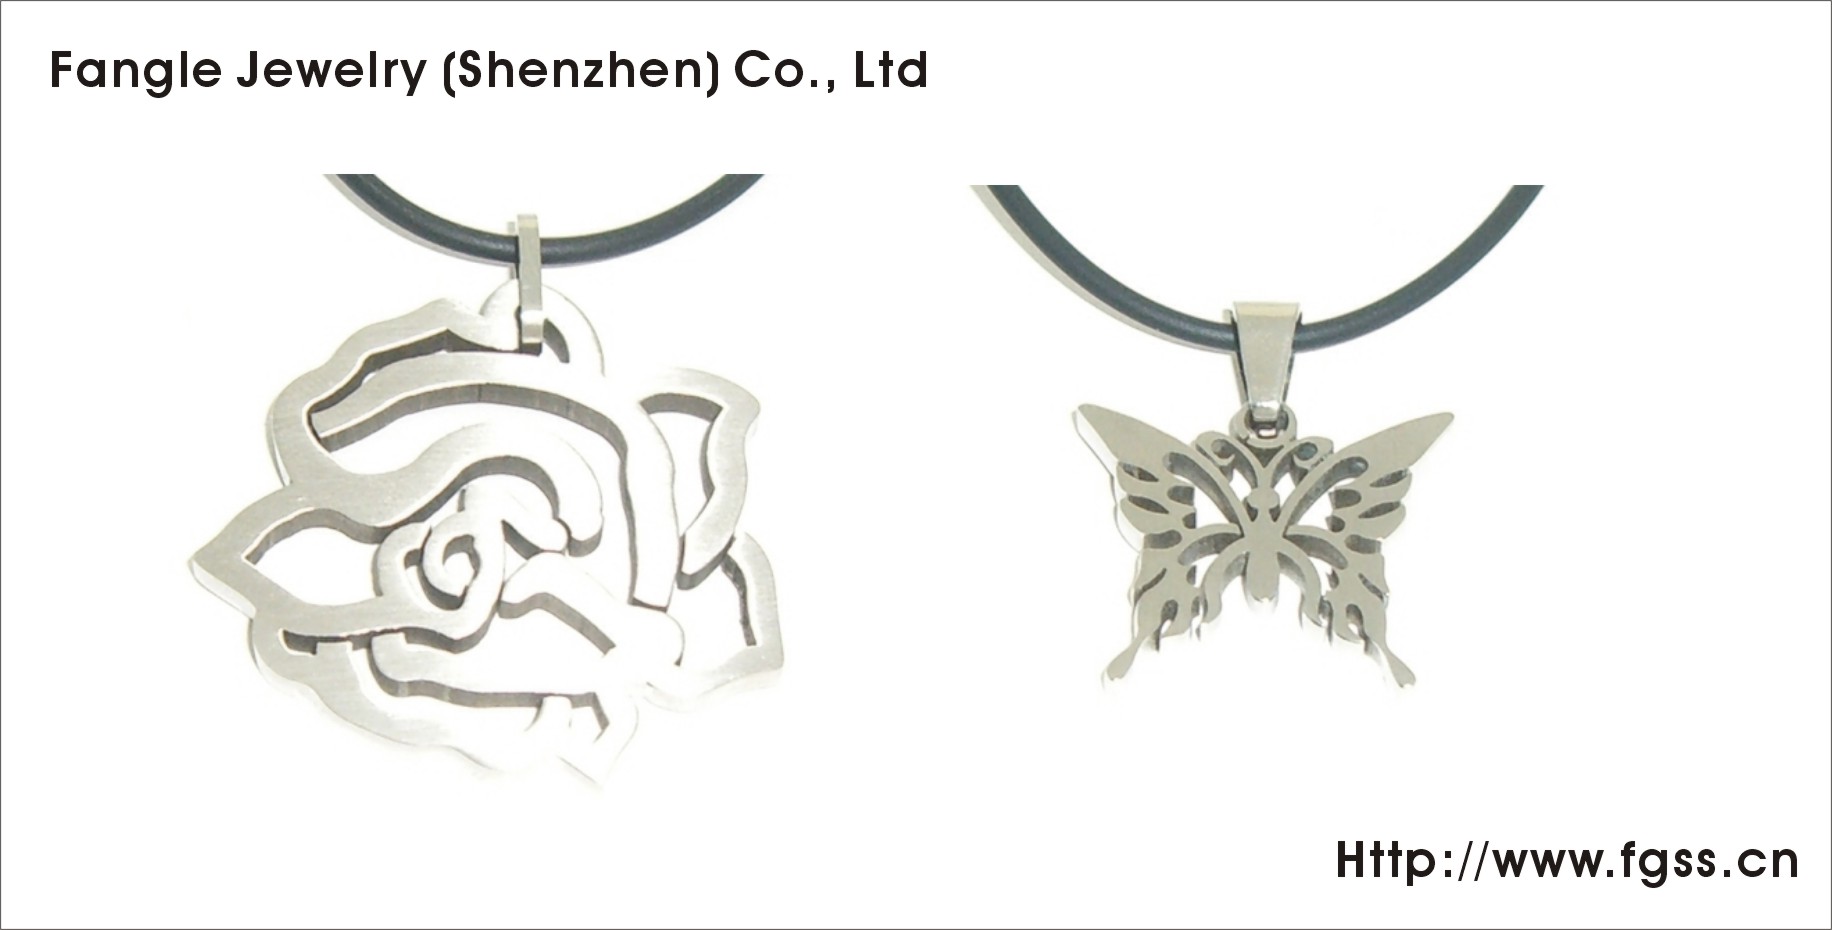 Stainless steel pendants